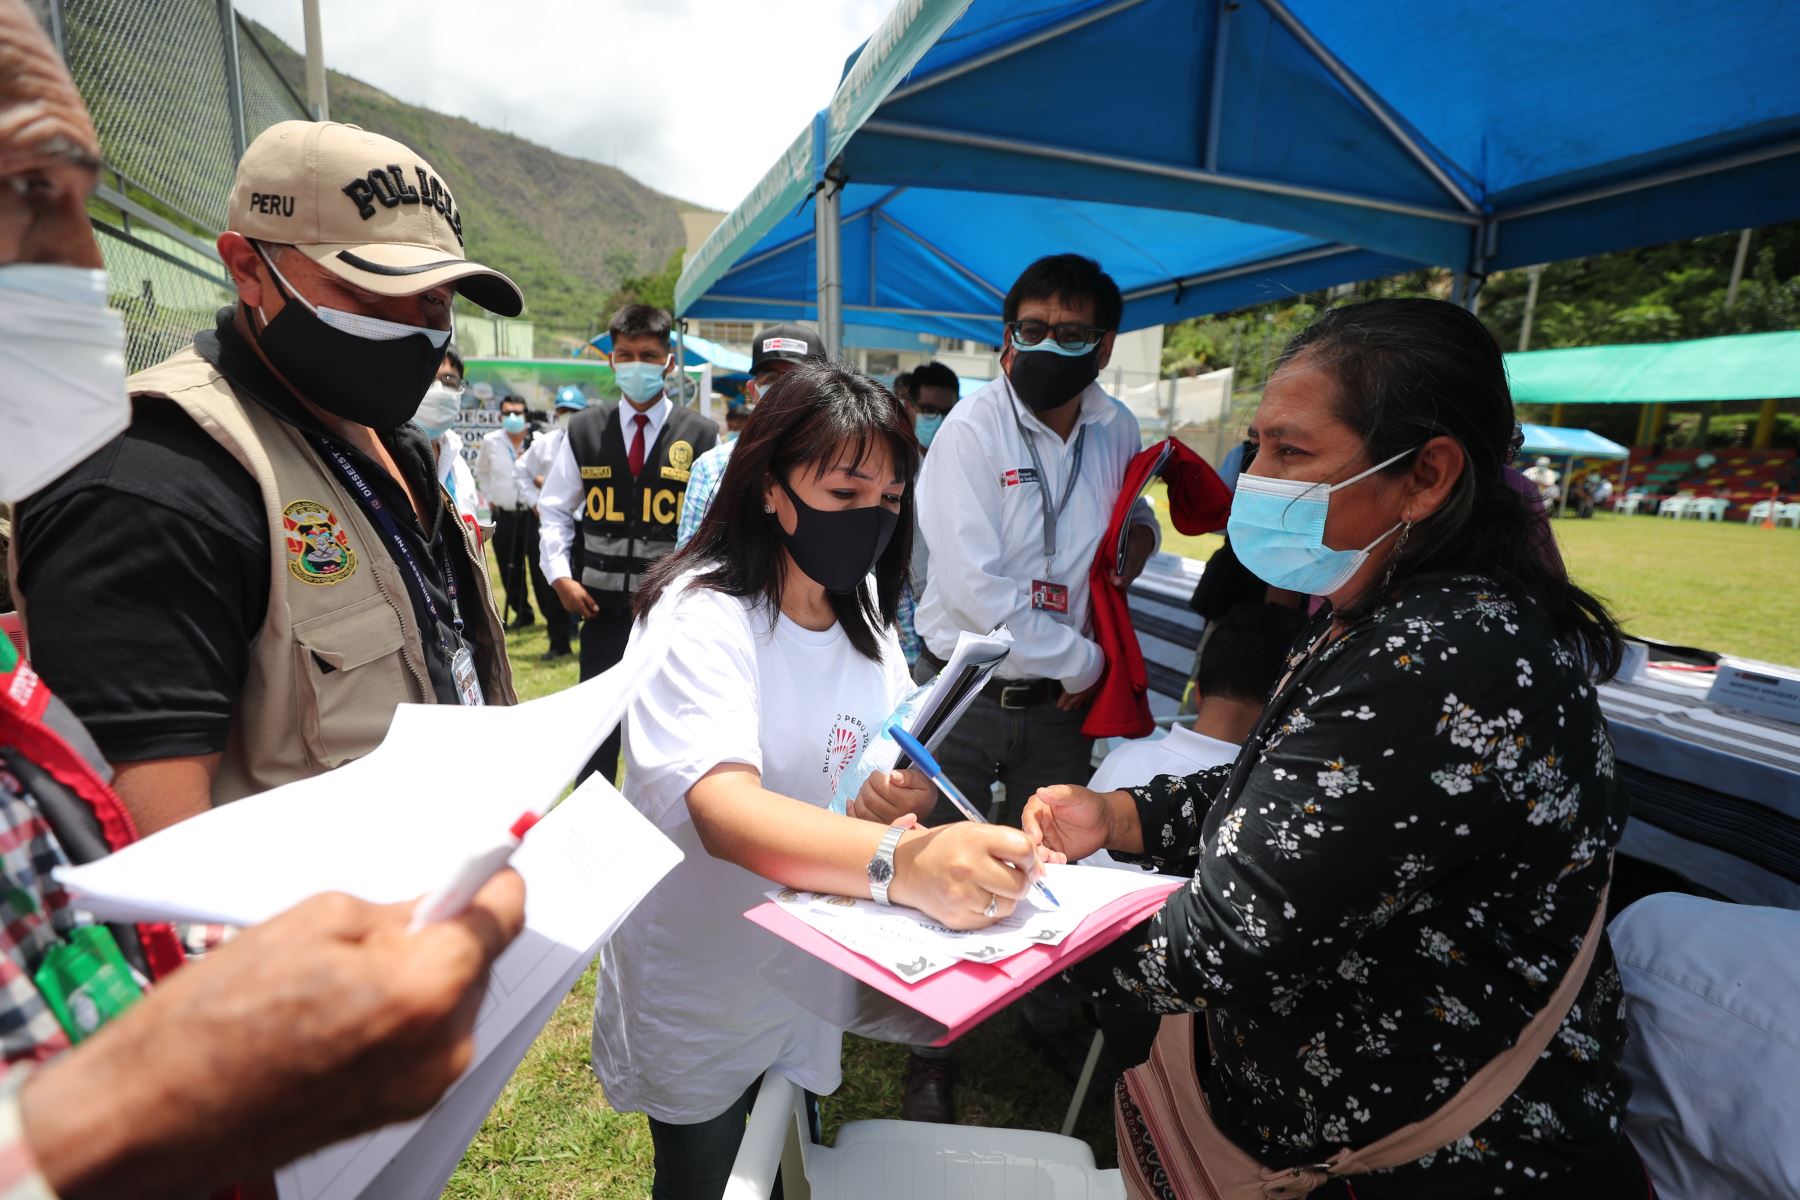 Presidenta del Consejo de Ministros, Mirtha Vásquez llega a  a Quillabamba, Cusco, junto a  la Comisión del Ejecutivo y congresistas, para la instalación de la Mesa Técnica de desarrollo de la provincia de La Convención, que permitirá atender demandas de la población de manera institucionalizada.
Foto: PCM